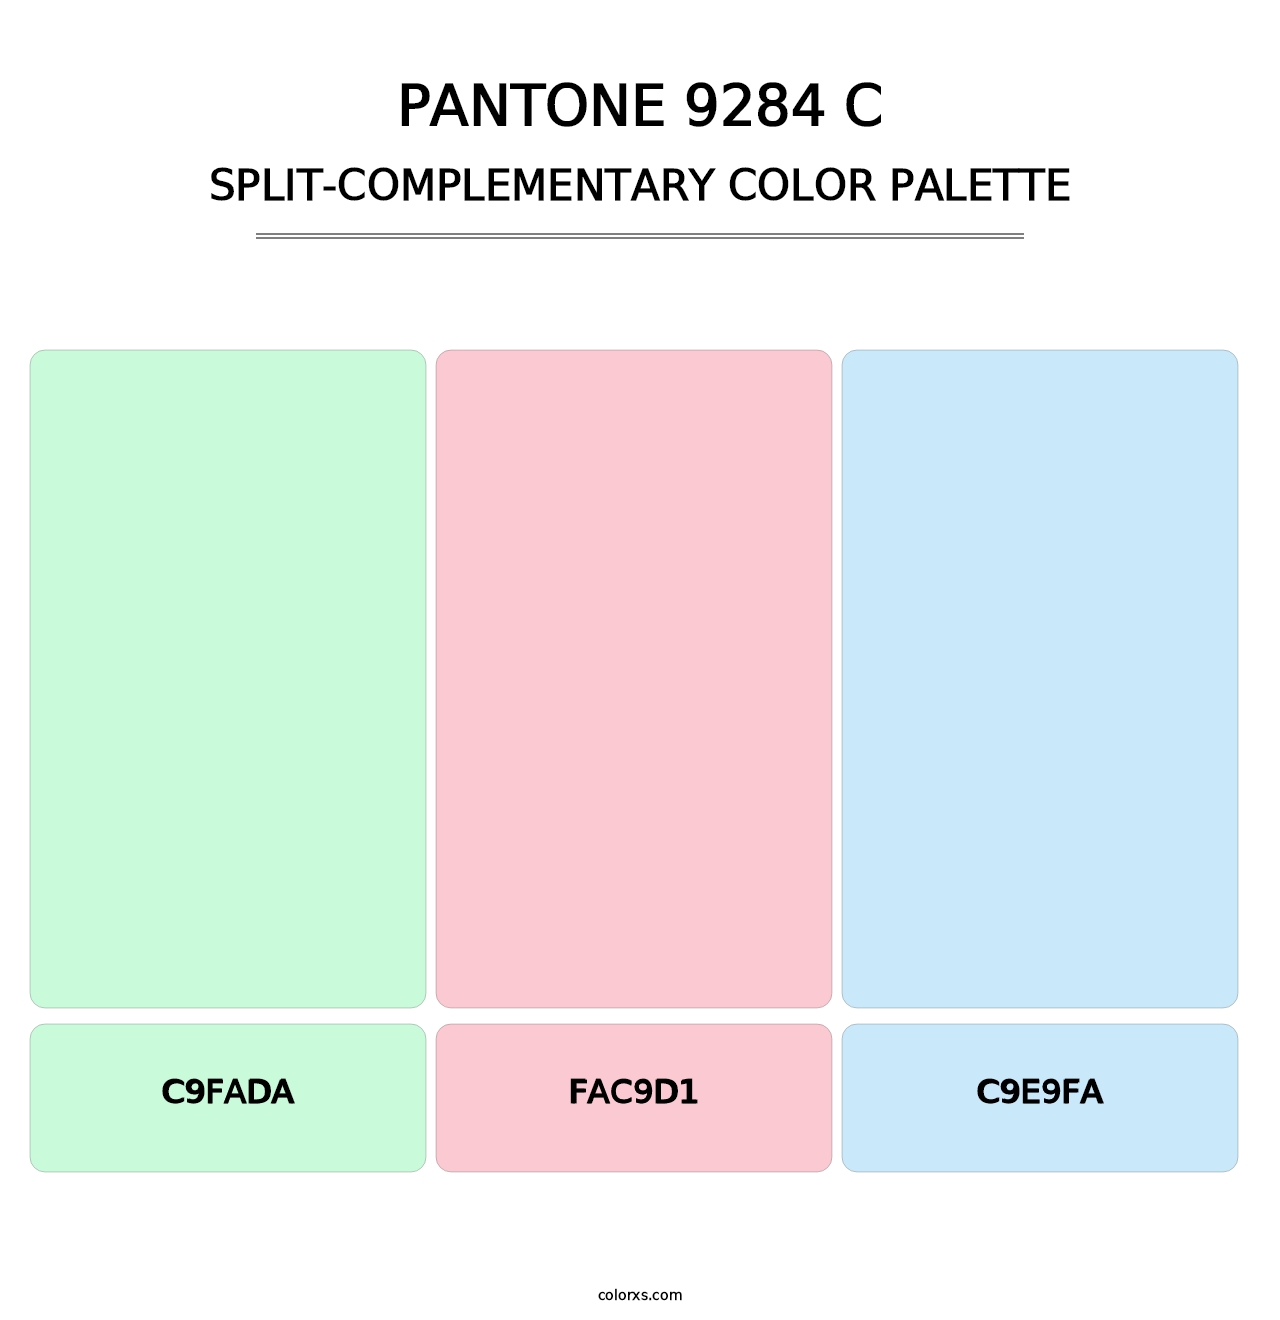 PANTONE 9284 C - Split-Complementary Color Palette